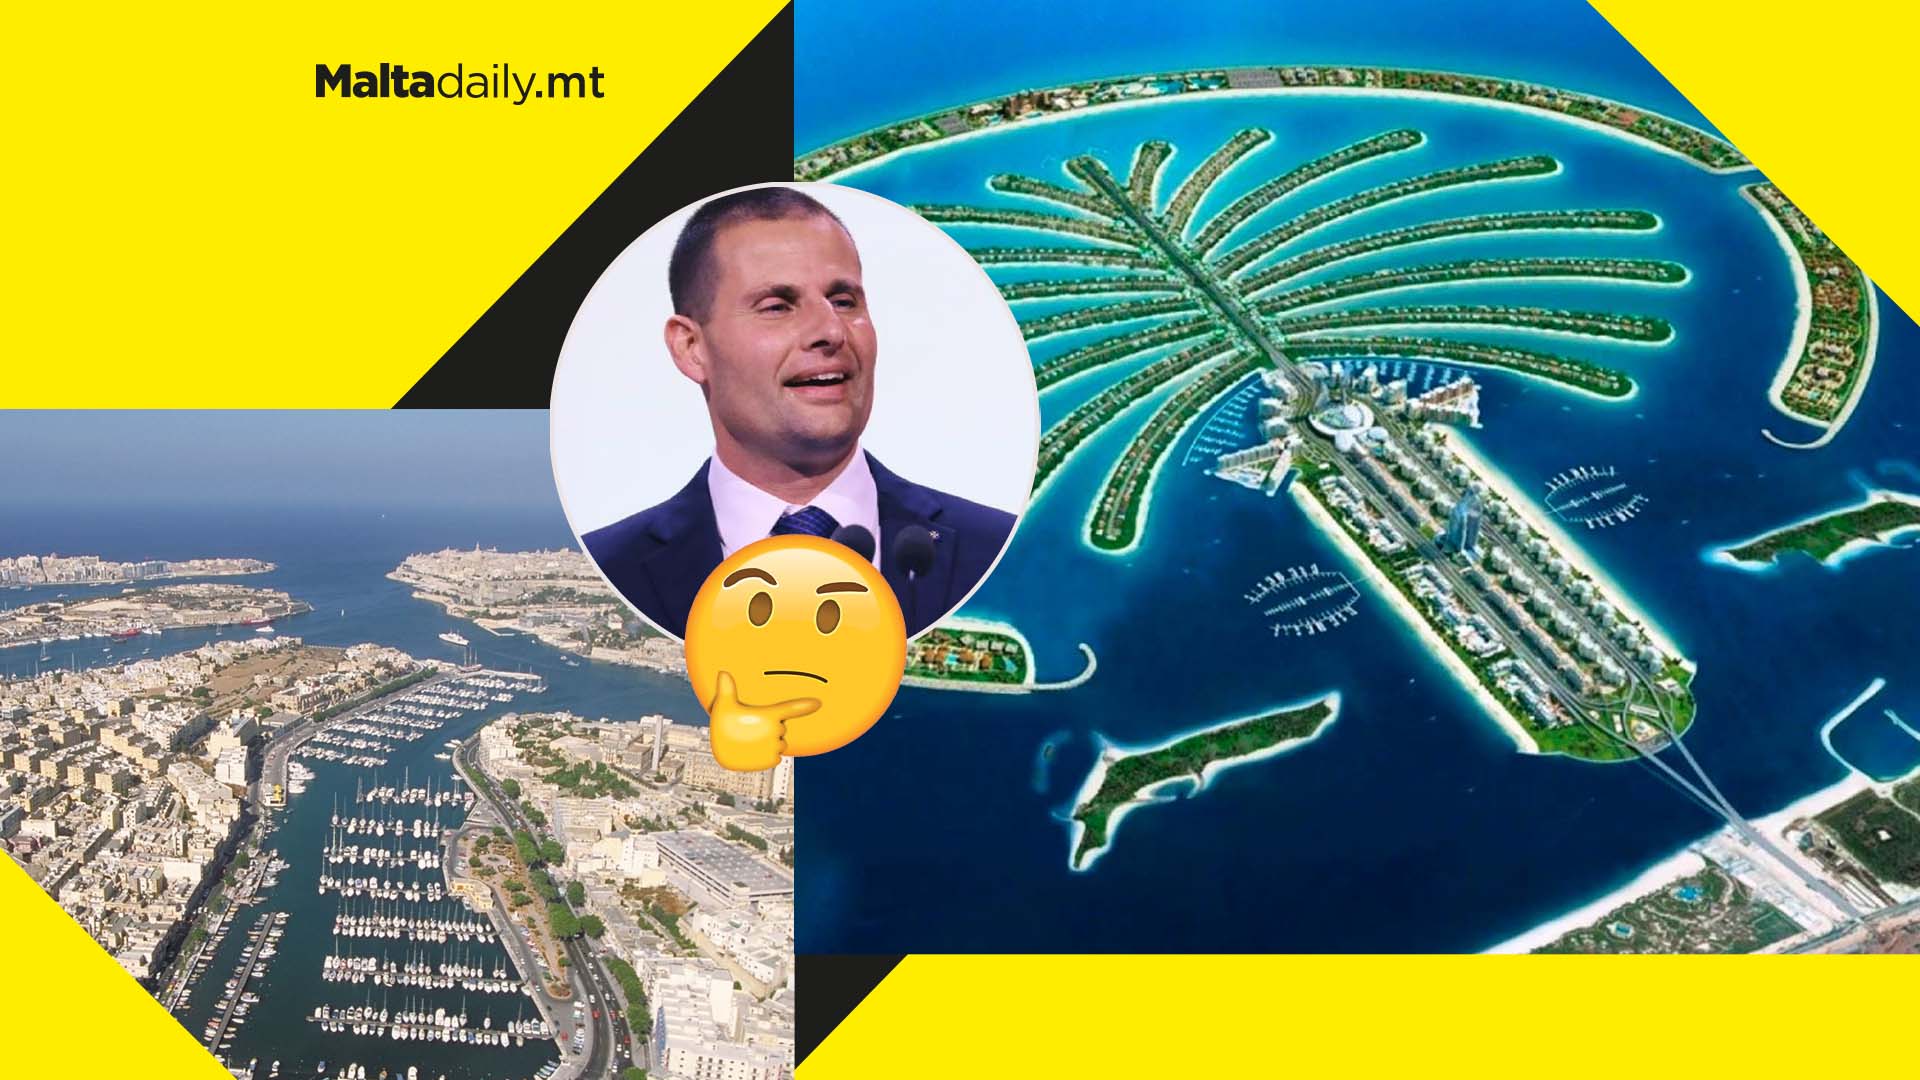 Could Malta become the next Dubai? Labour’s land reclamation pledge